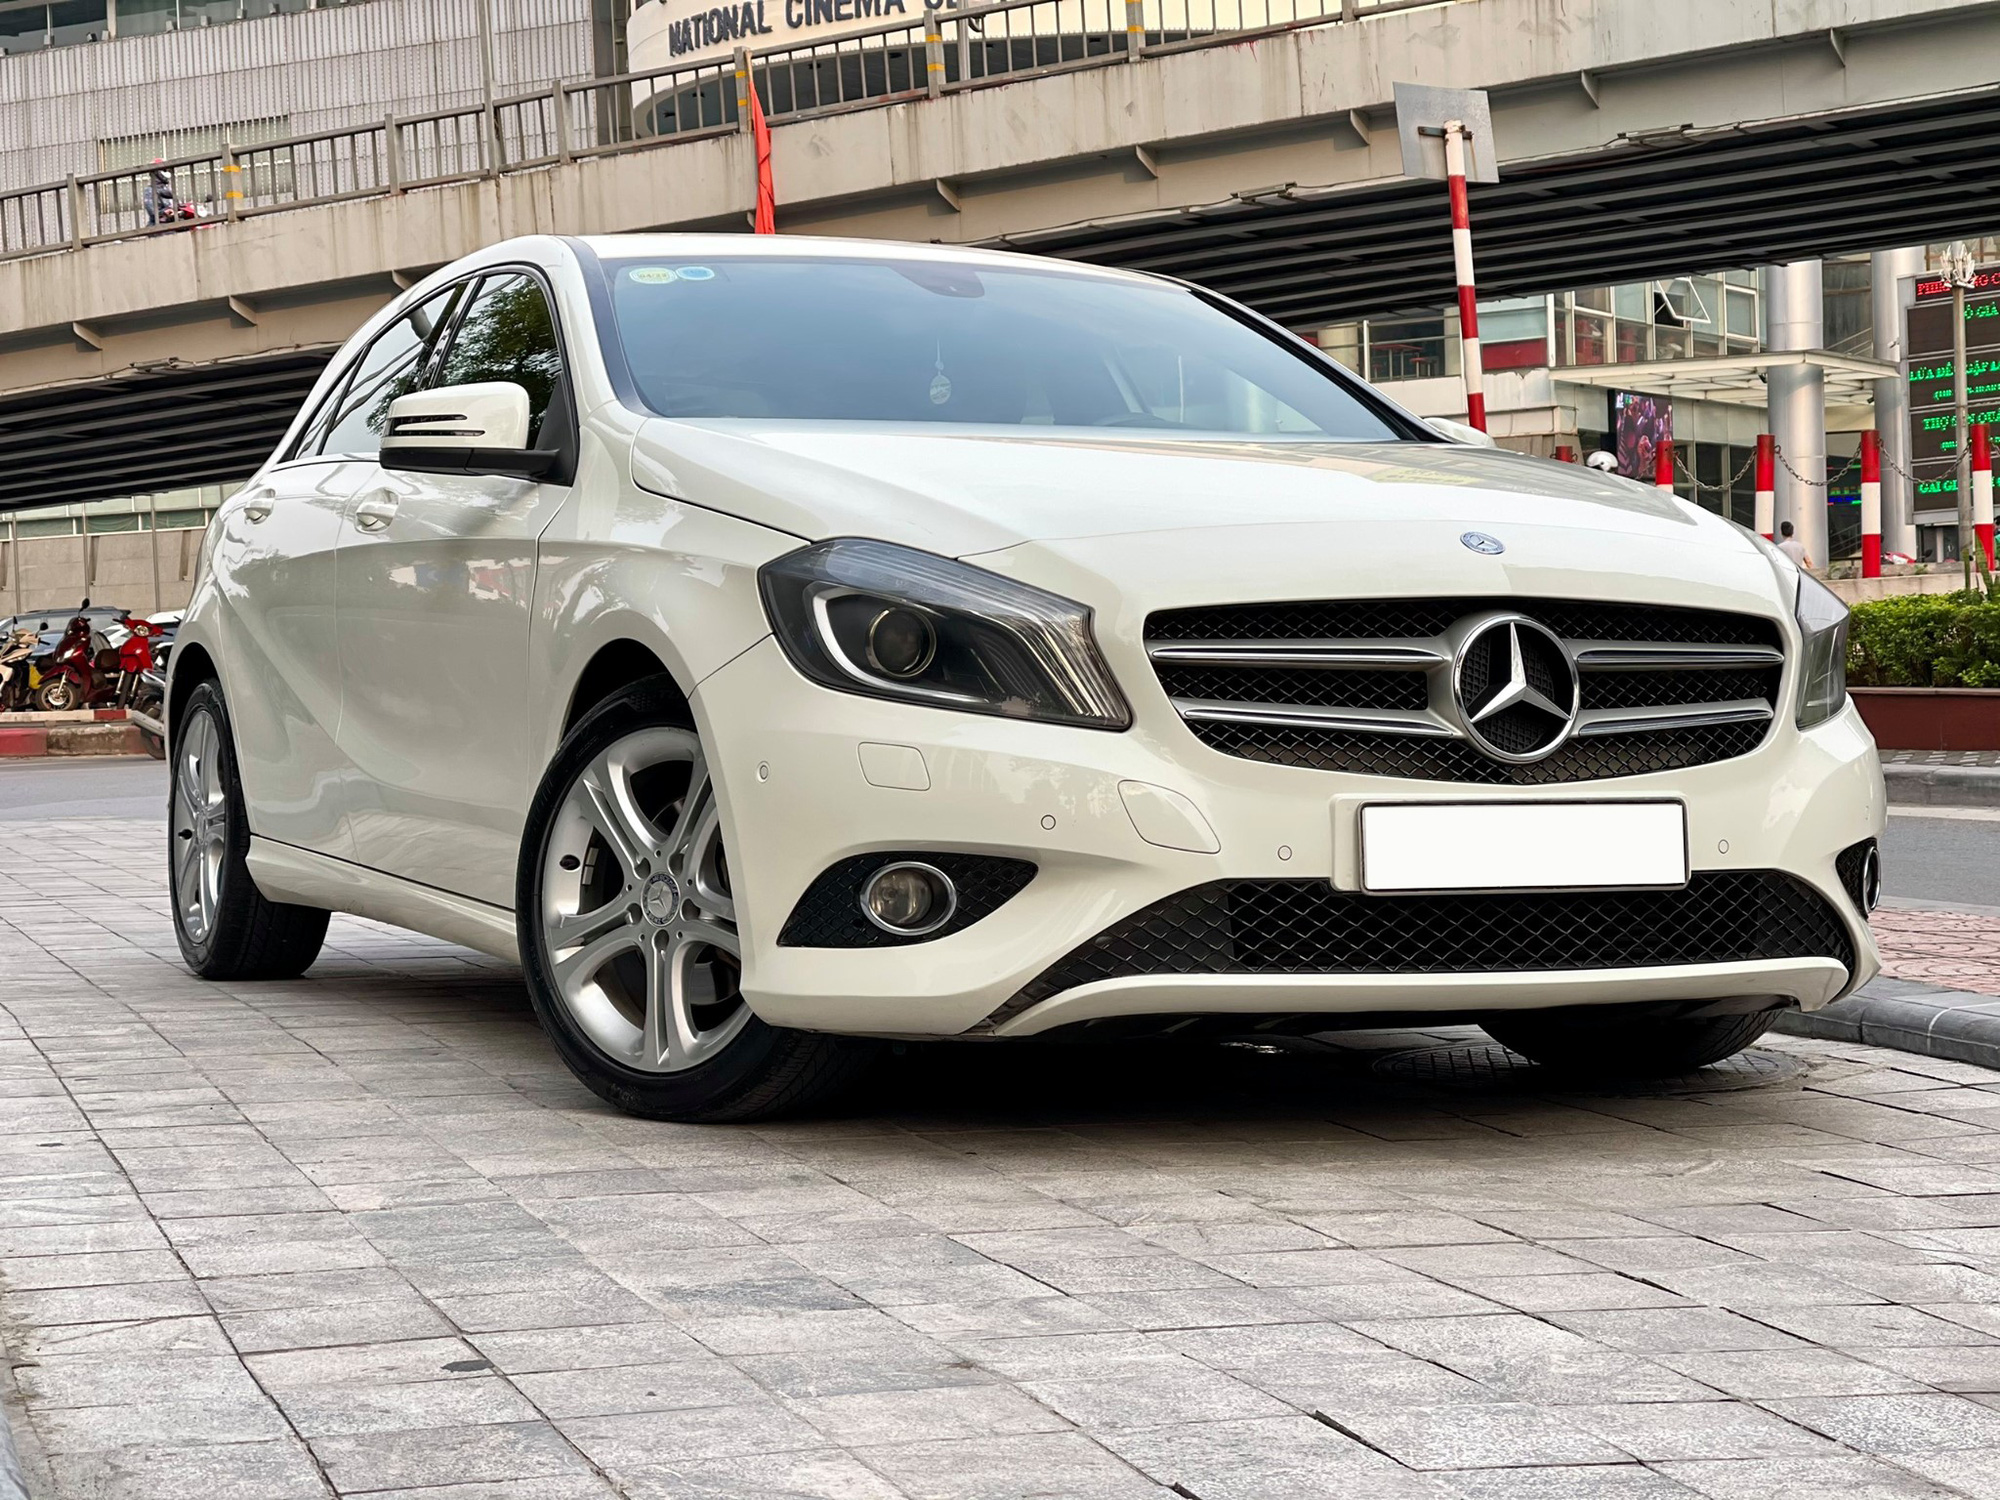 Mới chạy 50.000km, chiếc Mercedes-Benz nhập khẩu này có giá thấp hơn cả Toyota Yaris - Ảnh 4.